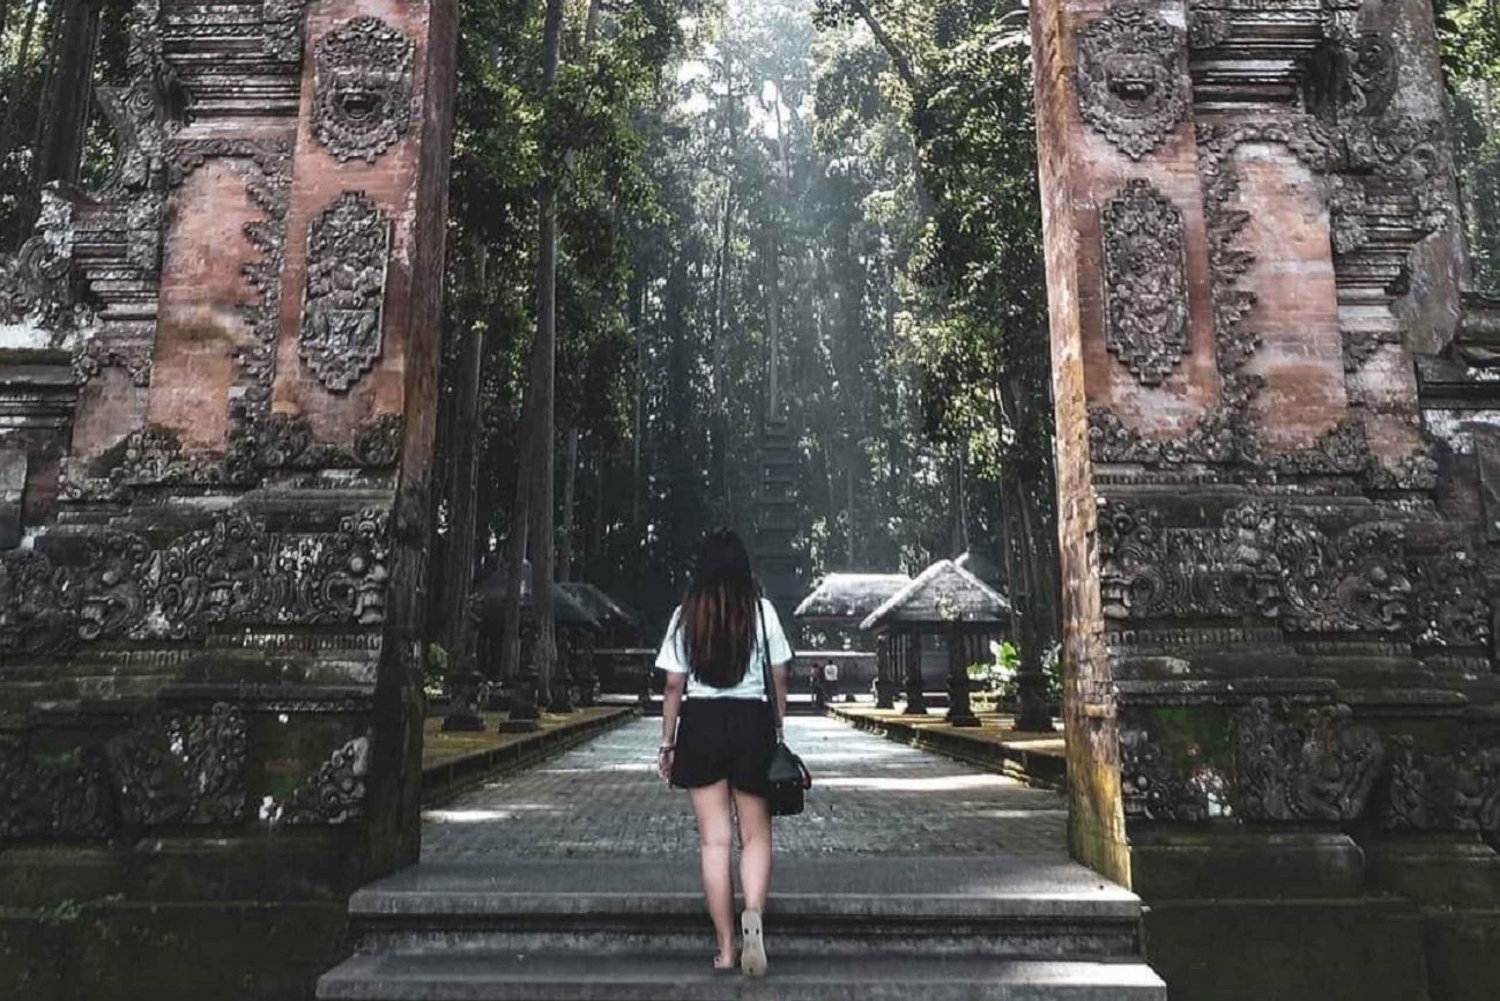 Bali: Apskogen, Taman Ayun & Tanah Lot Sunset Tour